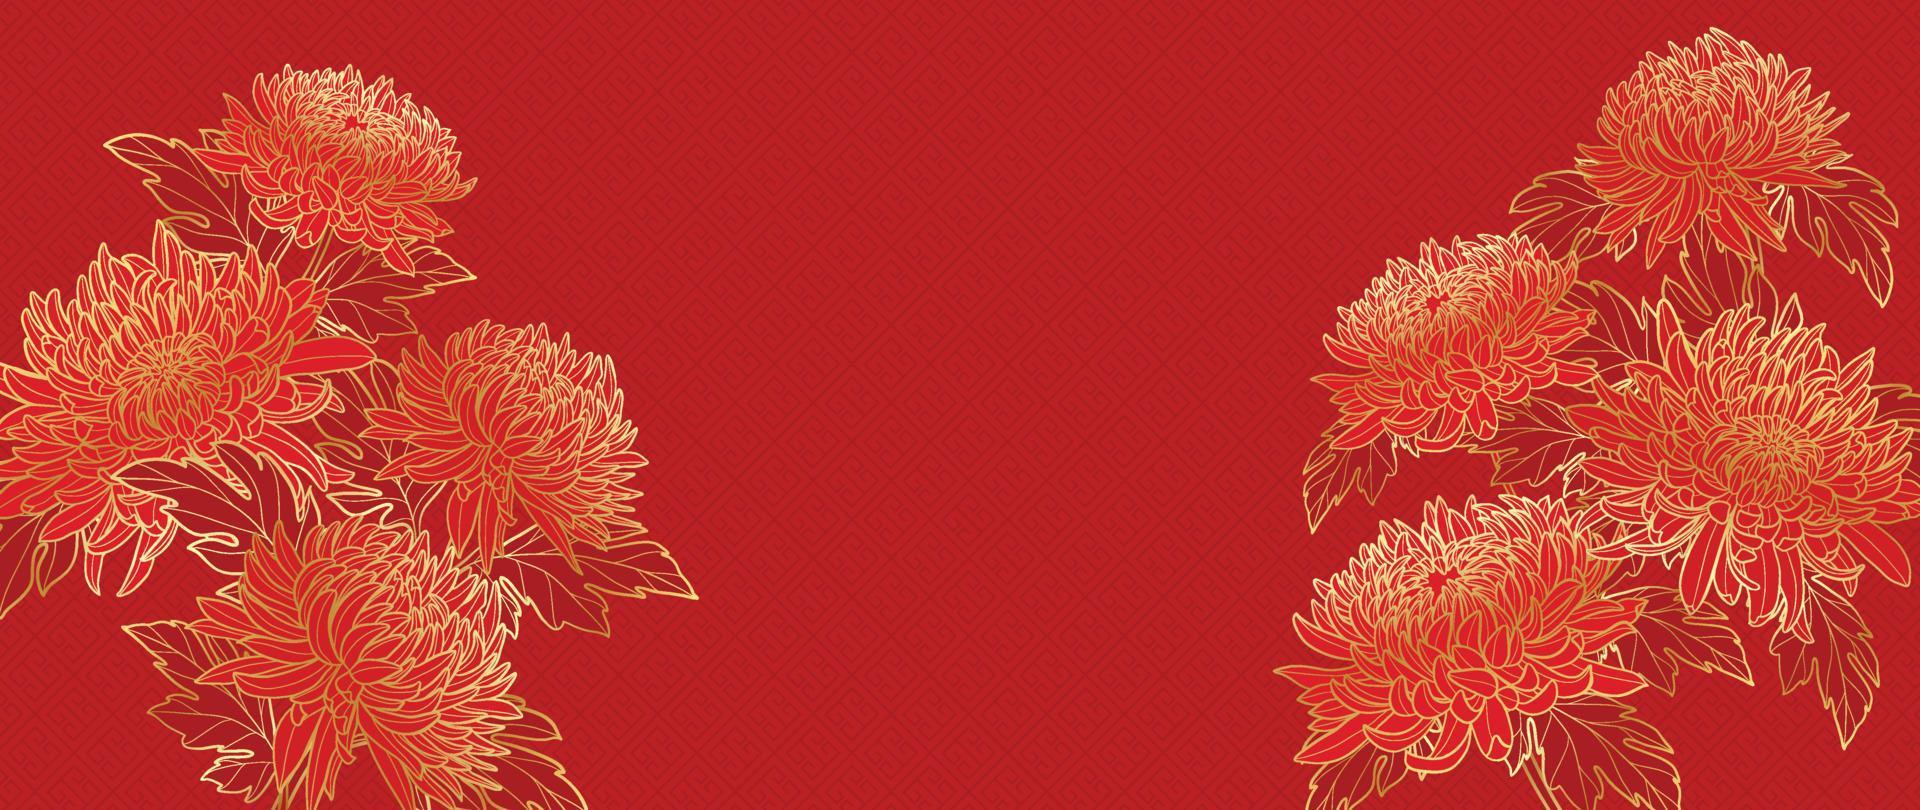 vector de fondo de patrón de estilo de lujo de feliz año nuevo chino. las mamás florecen el arte de la línea dorada sobre el fondo rojo del patrón chino. ilustración de diseño para papel tapiz, tarjeta, afiche, empaque, publicidad.